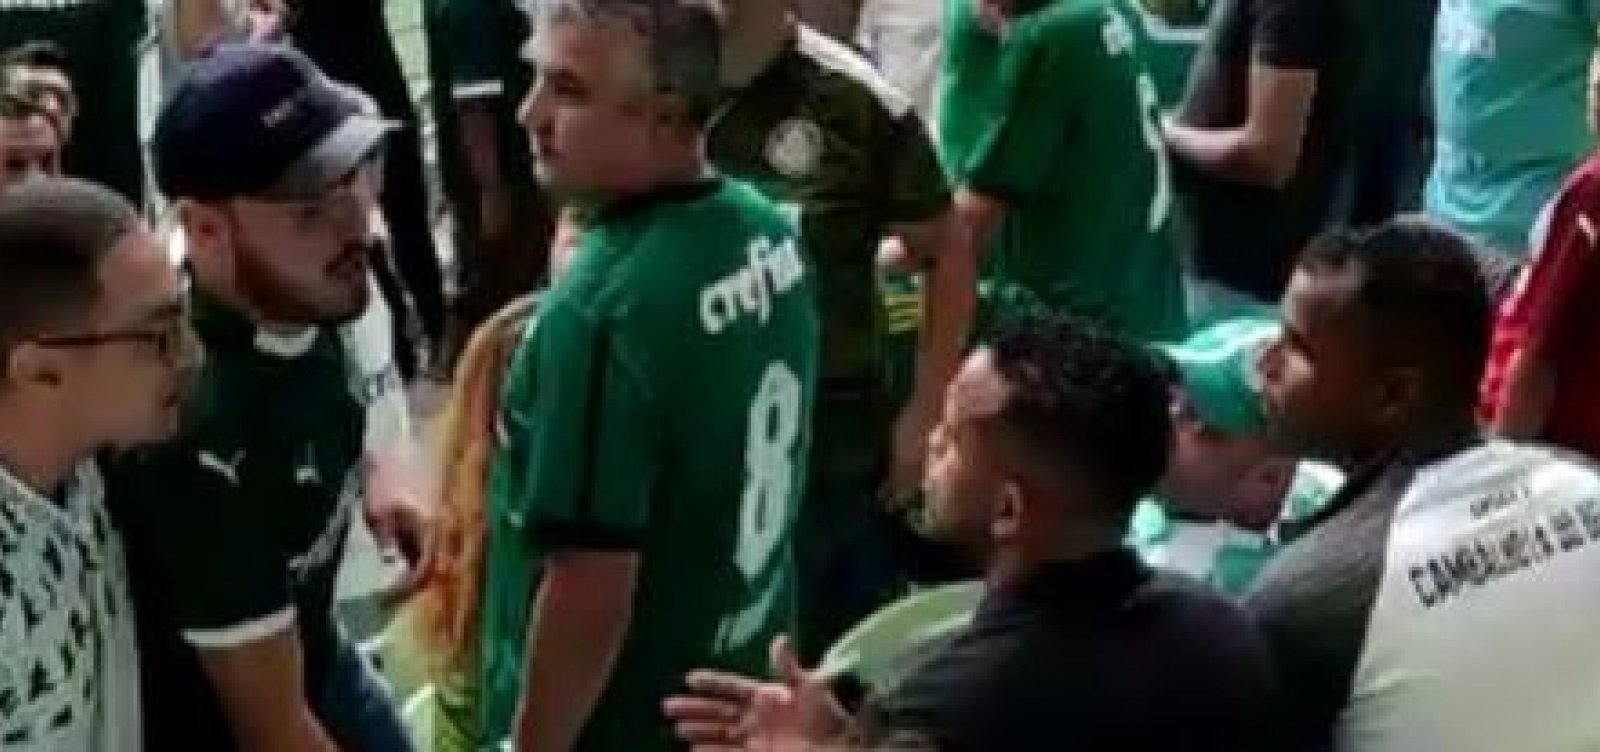 Ex-jogador baiano é expulso de estádio durante jogo do Palmeiras: 'Situação constrangedora'; vídeo